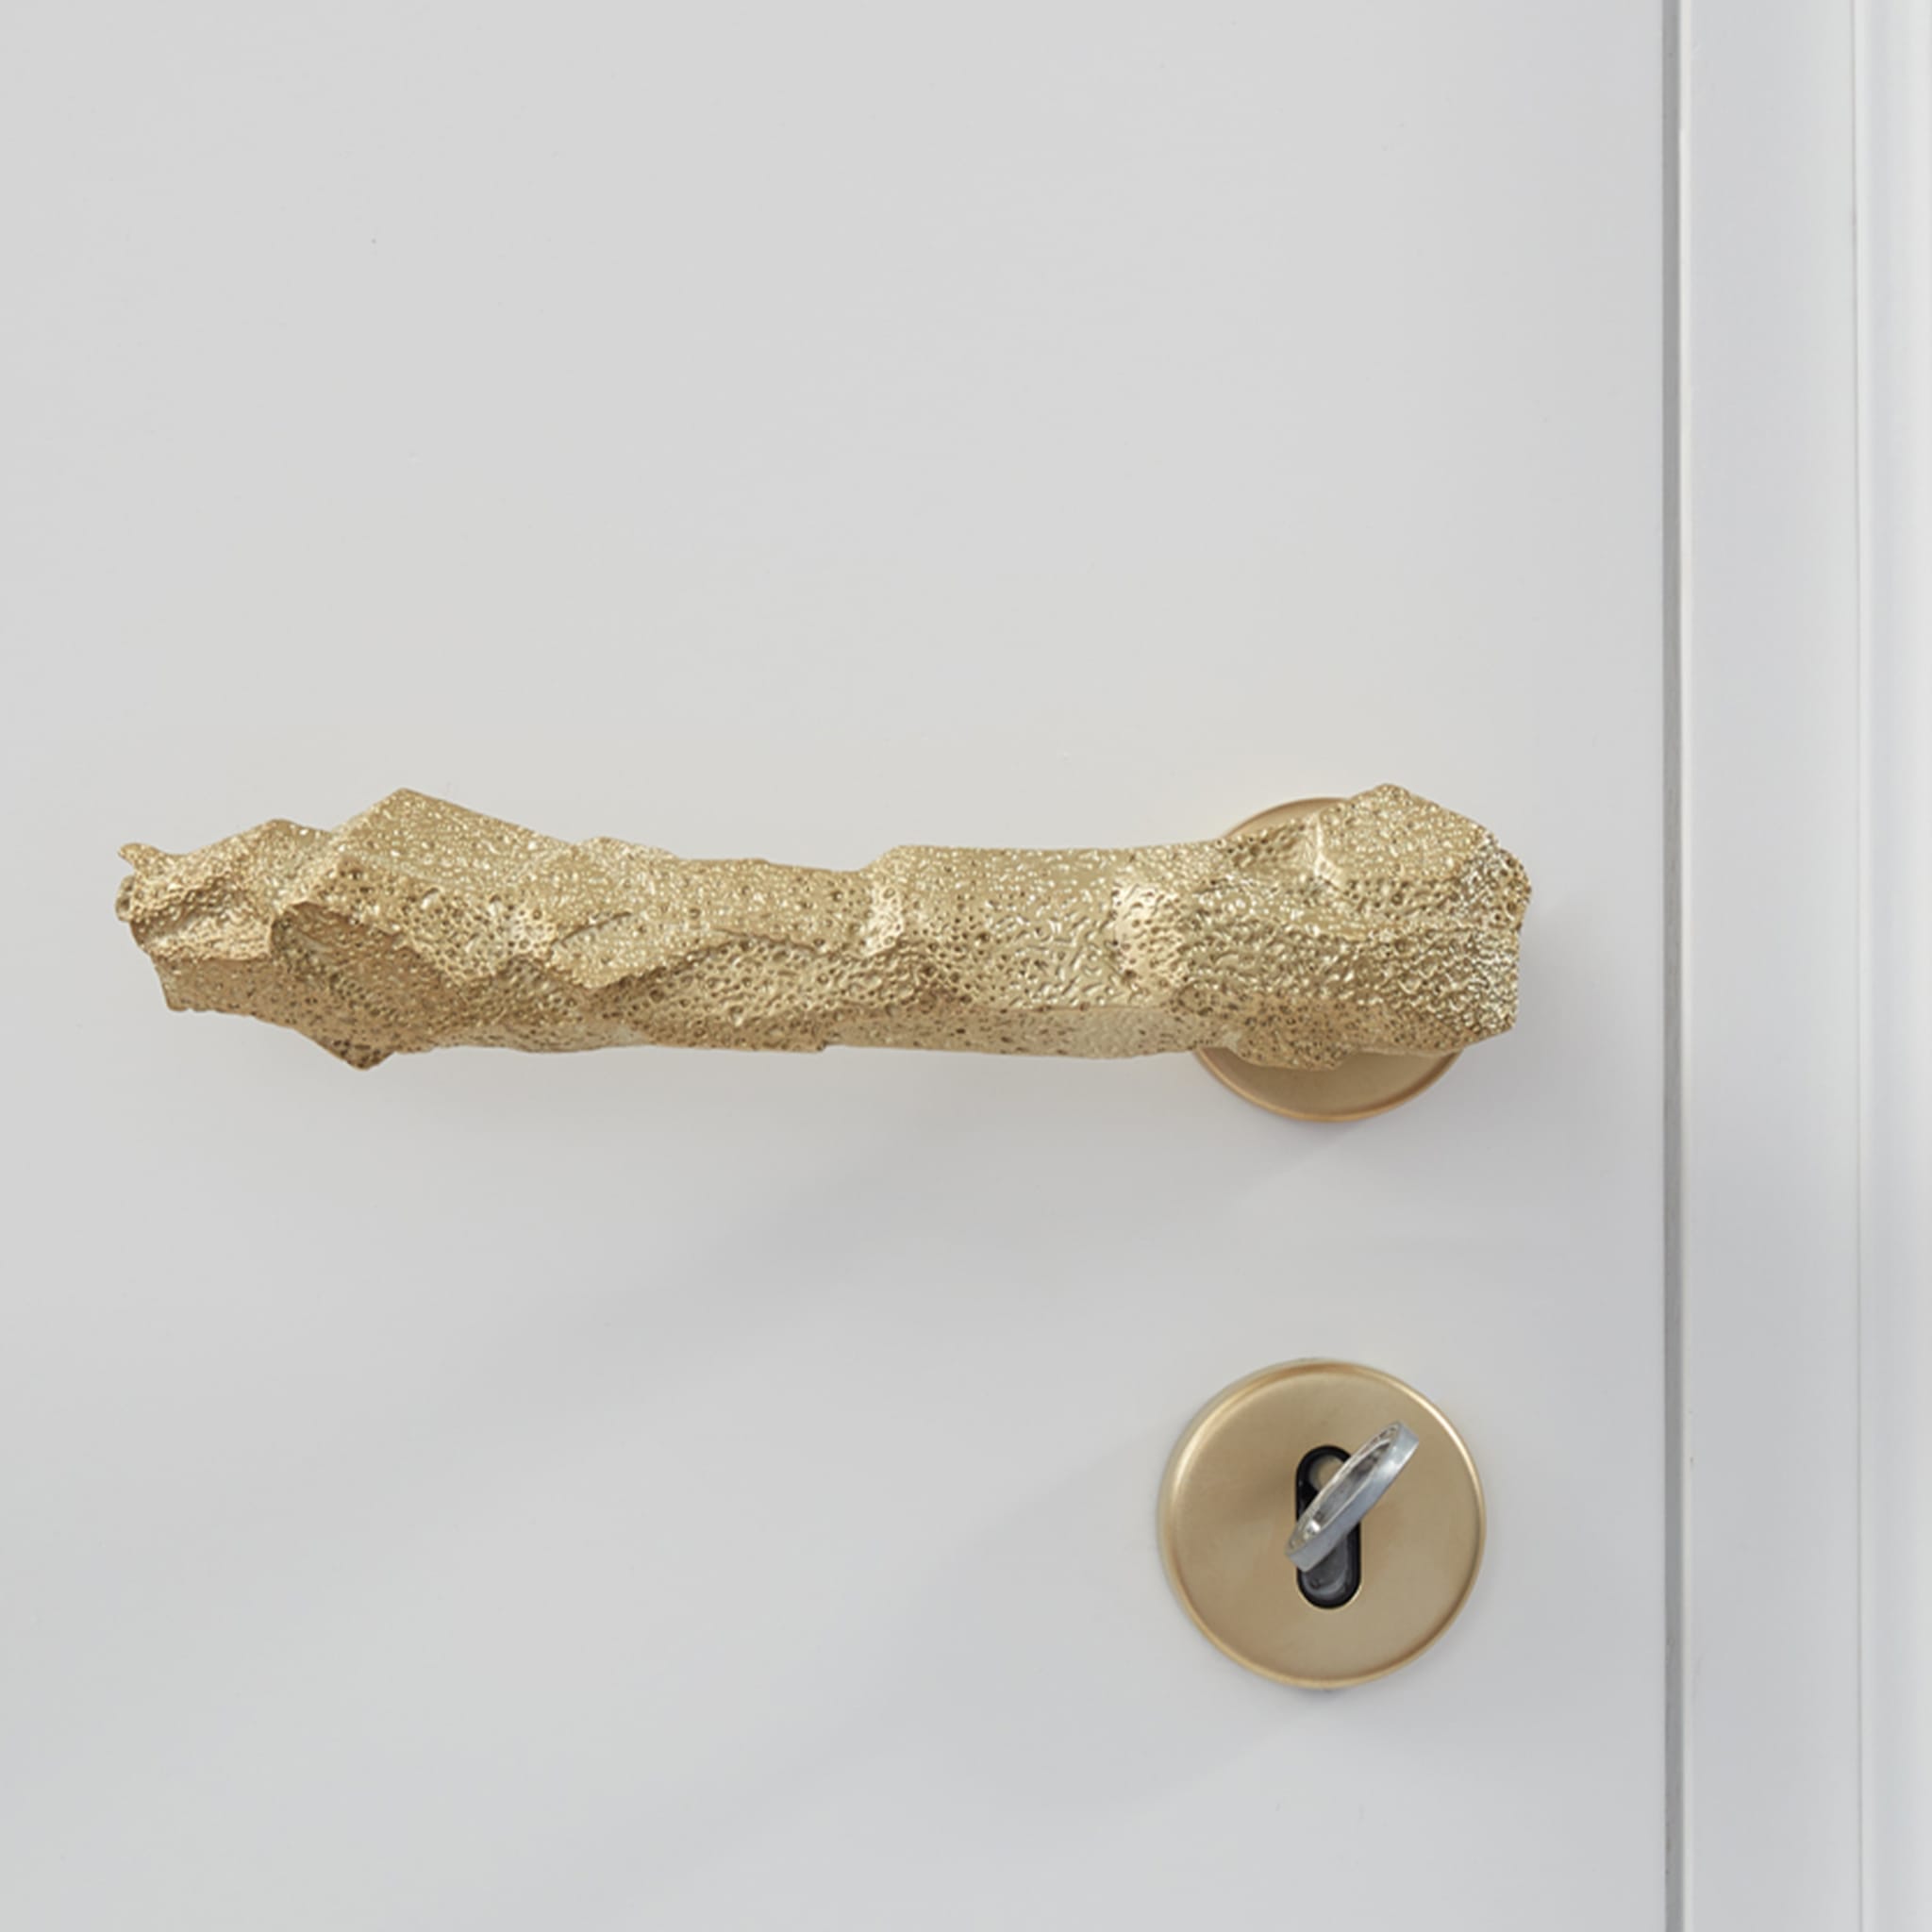 Lavica Brass Handle by Nicole Valenti - Alternative view 1